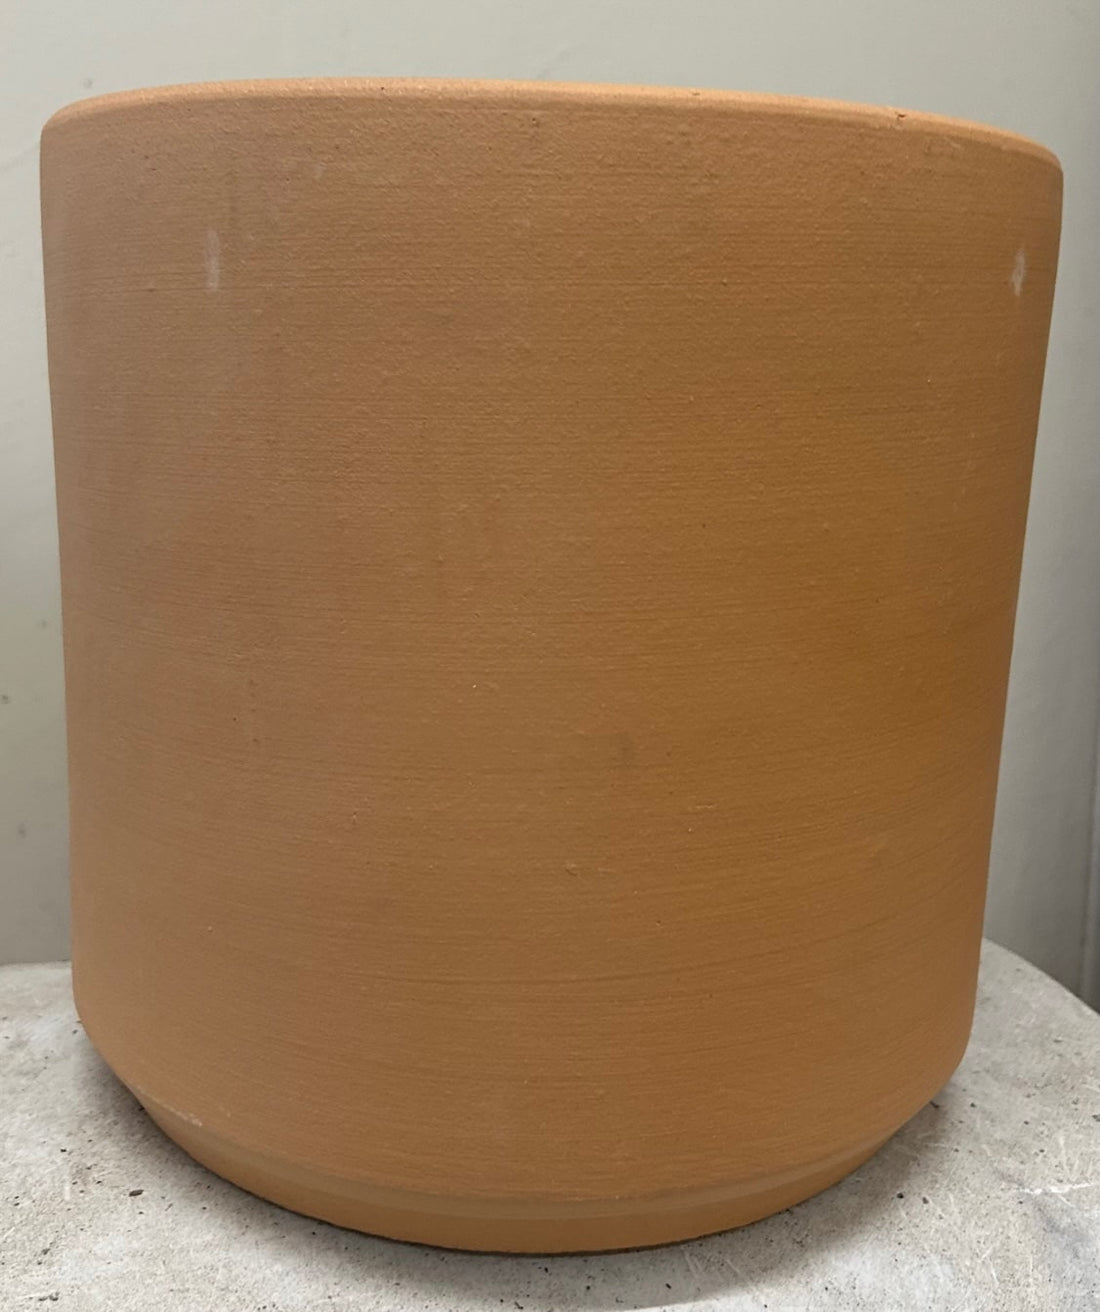 10" Deep Cylinder Buff Clay Pot